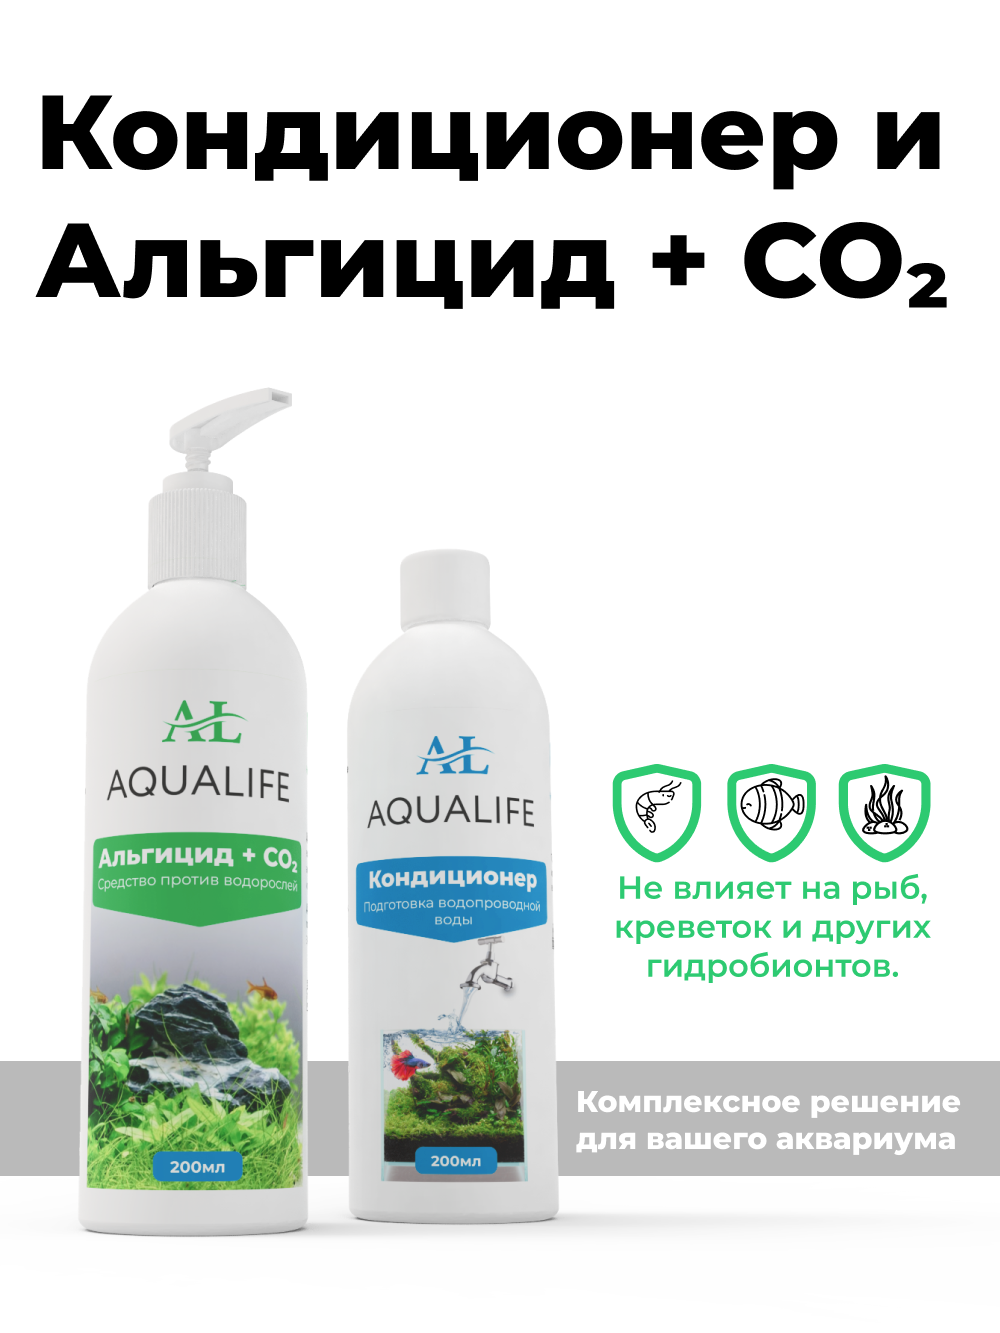 Средство против водорослей Альгицид + CO2 AQUALIFE, 200мл